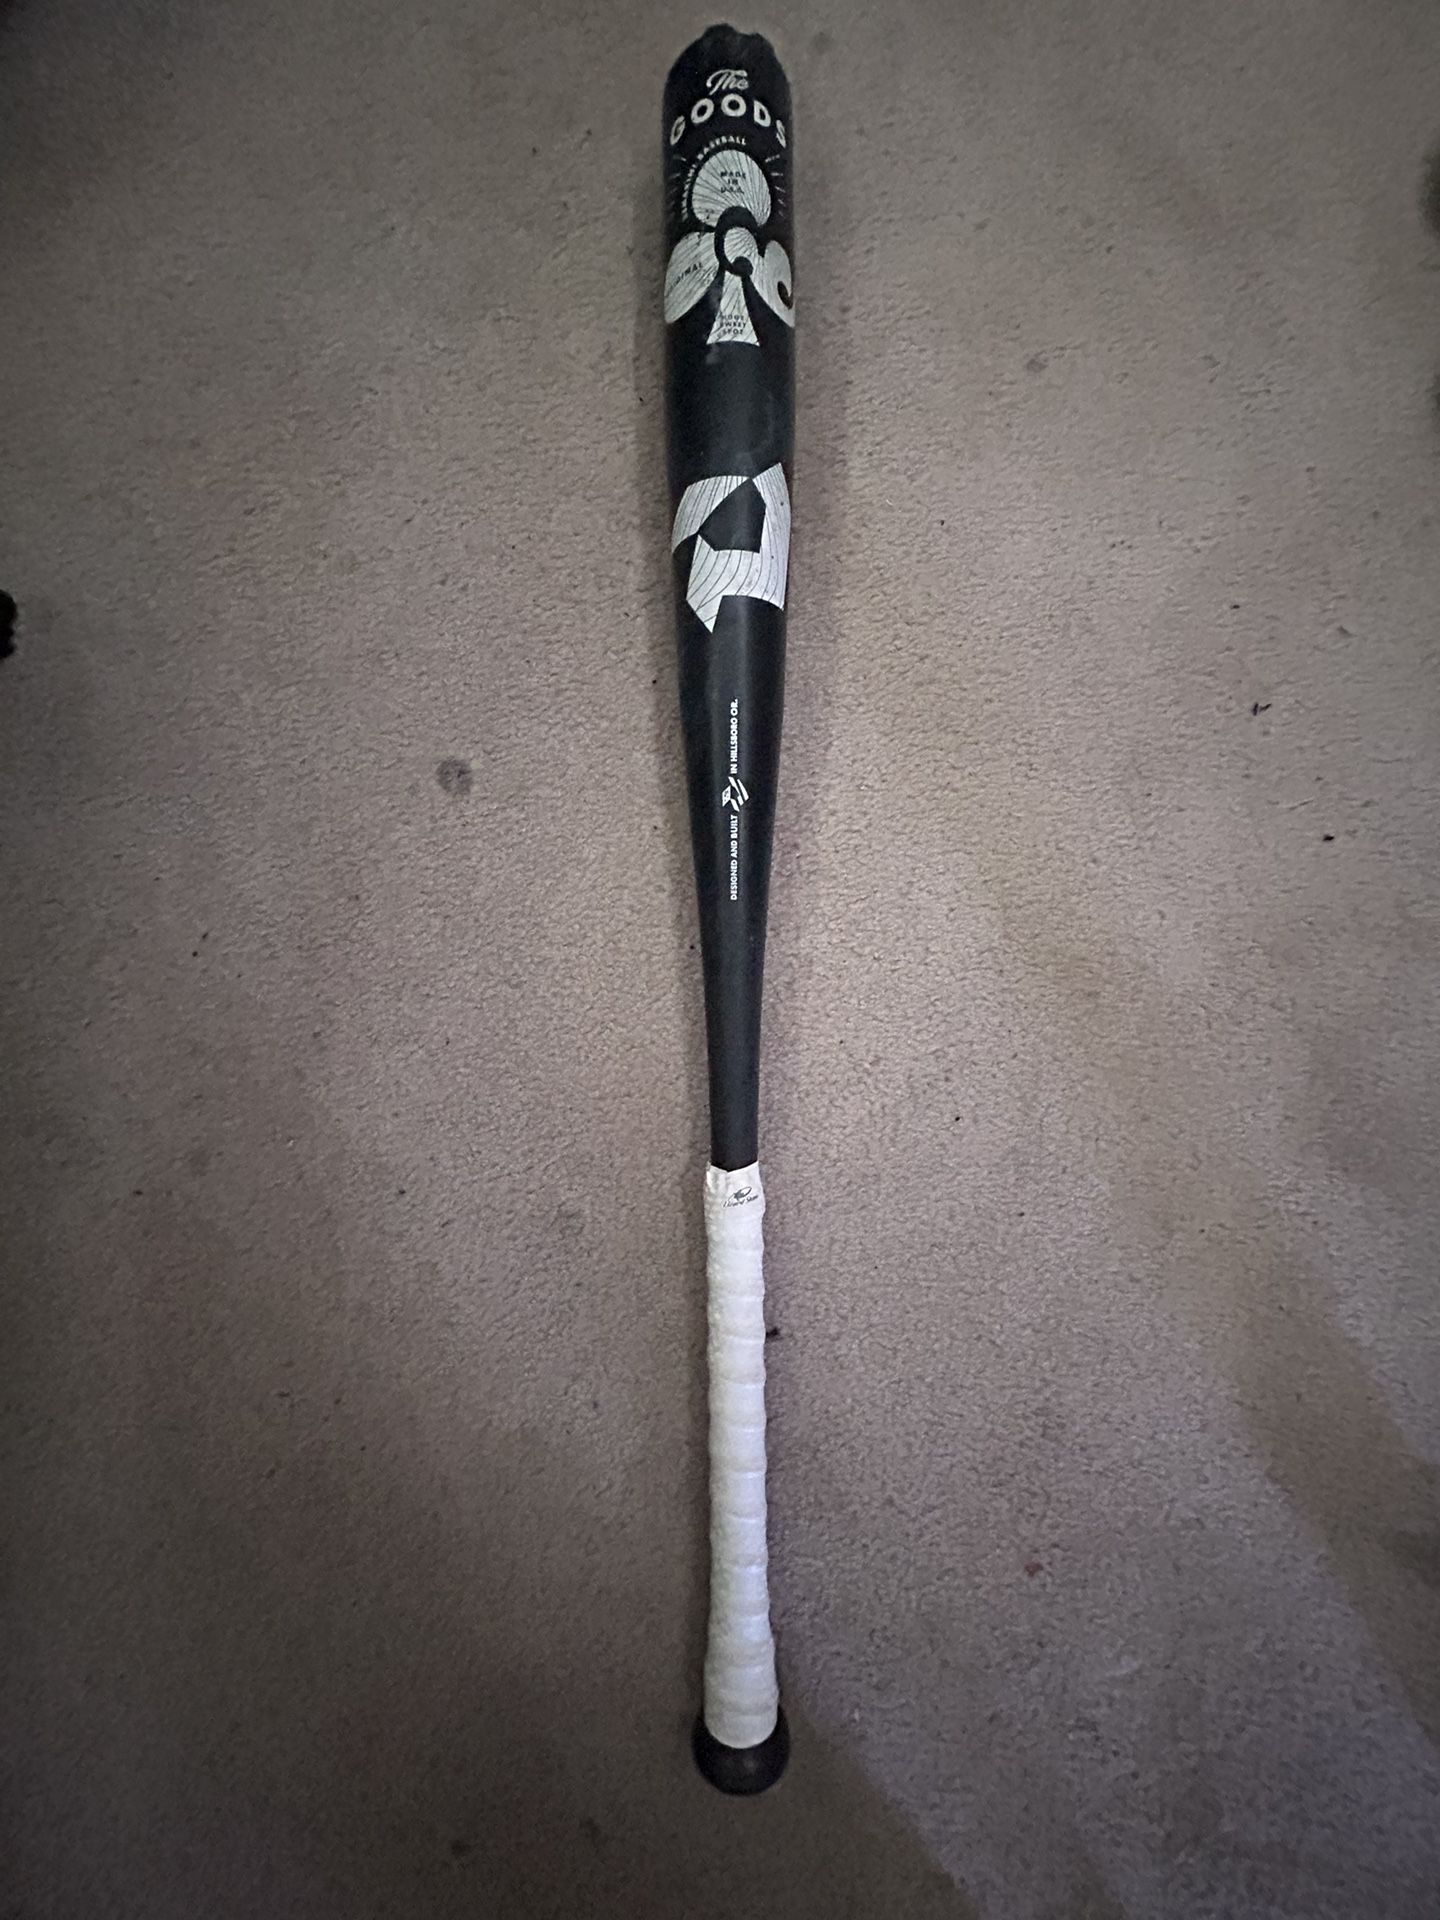 Baseball bat (the goods)